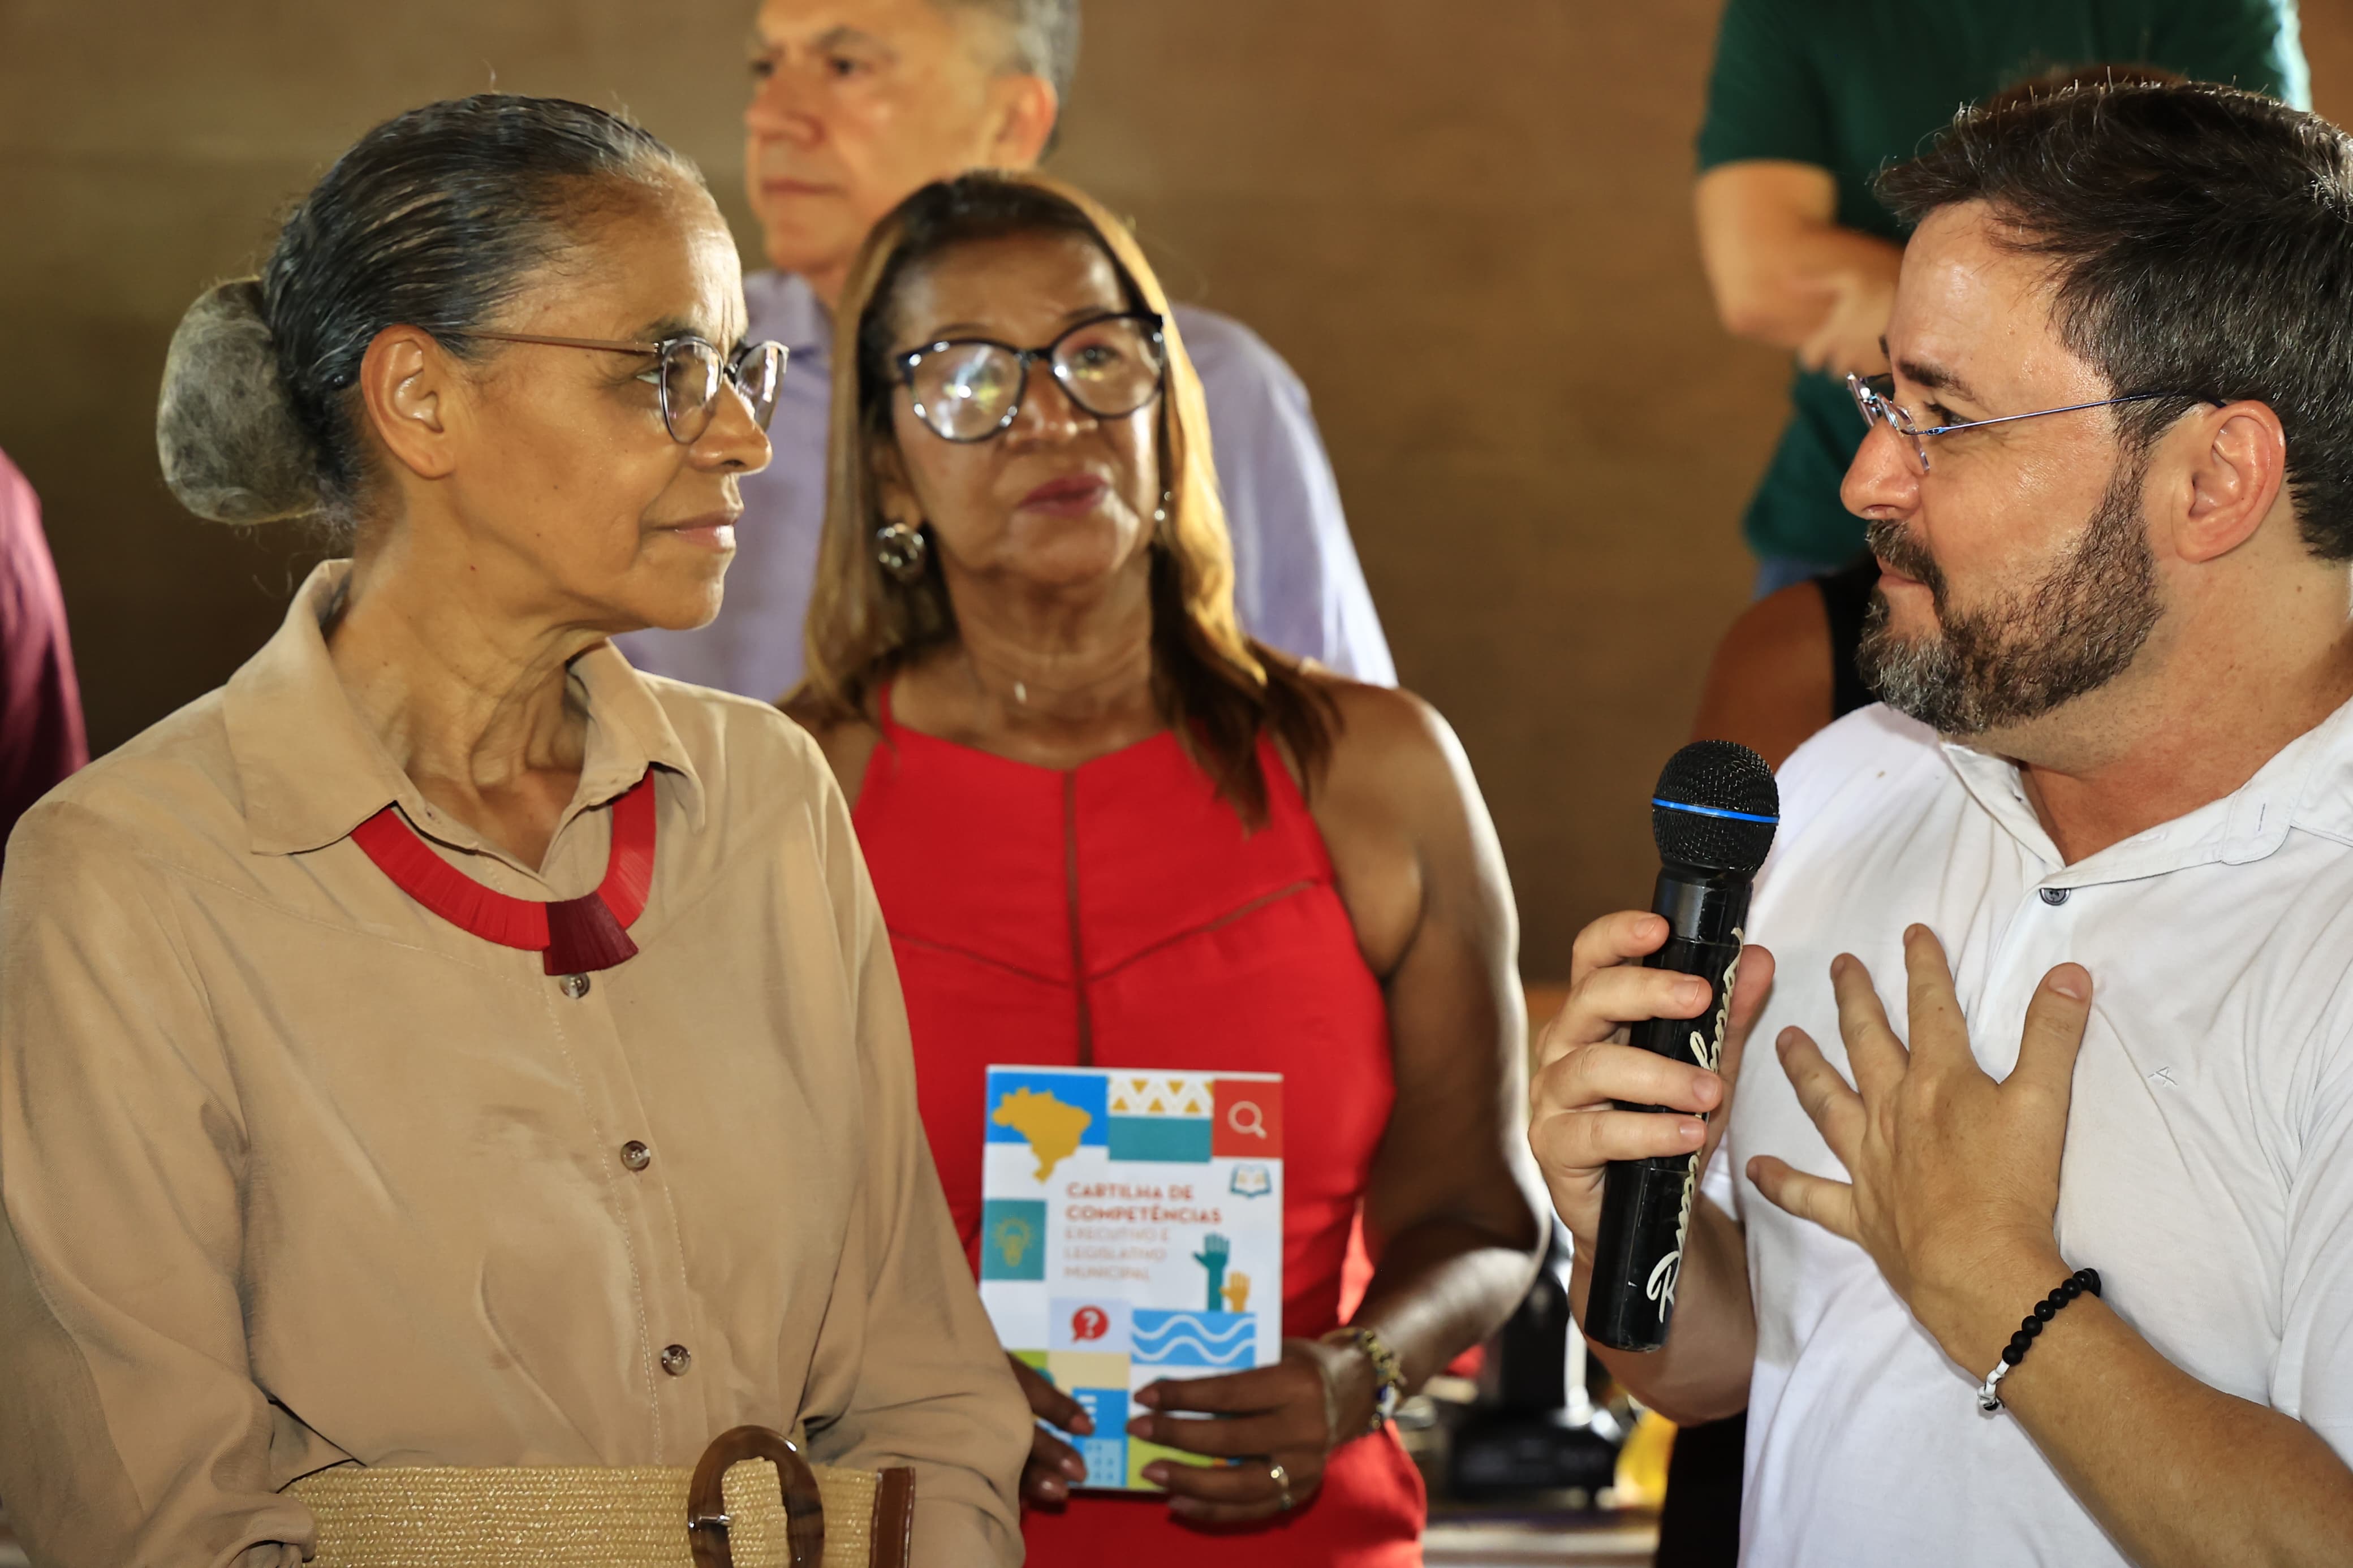 Vídeo: Em Teresina, Marina Silva declara apoio à pré-candidatura de Fábio Novo